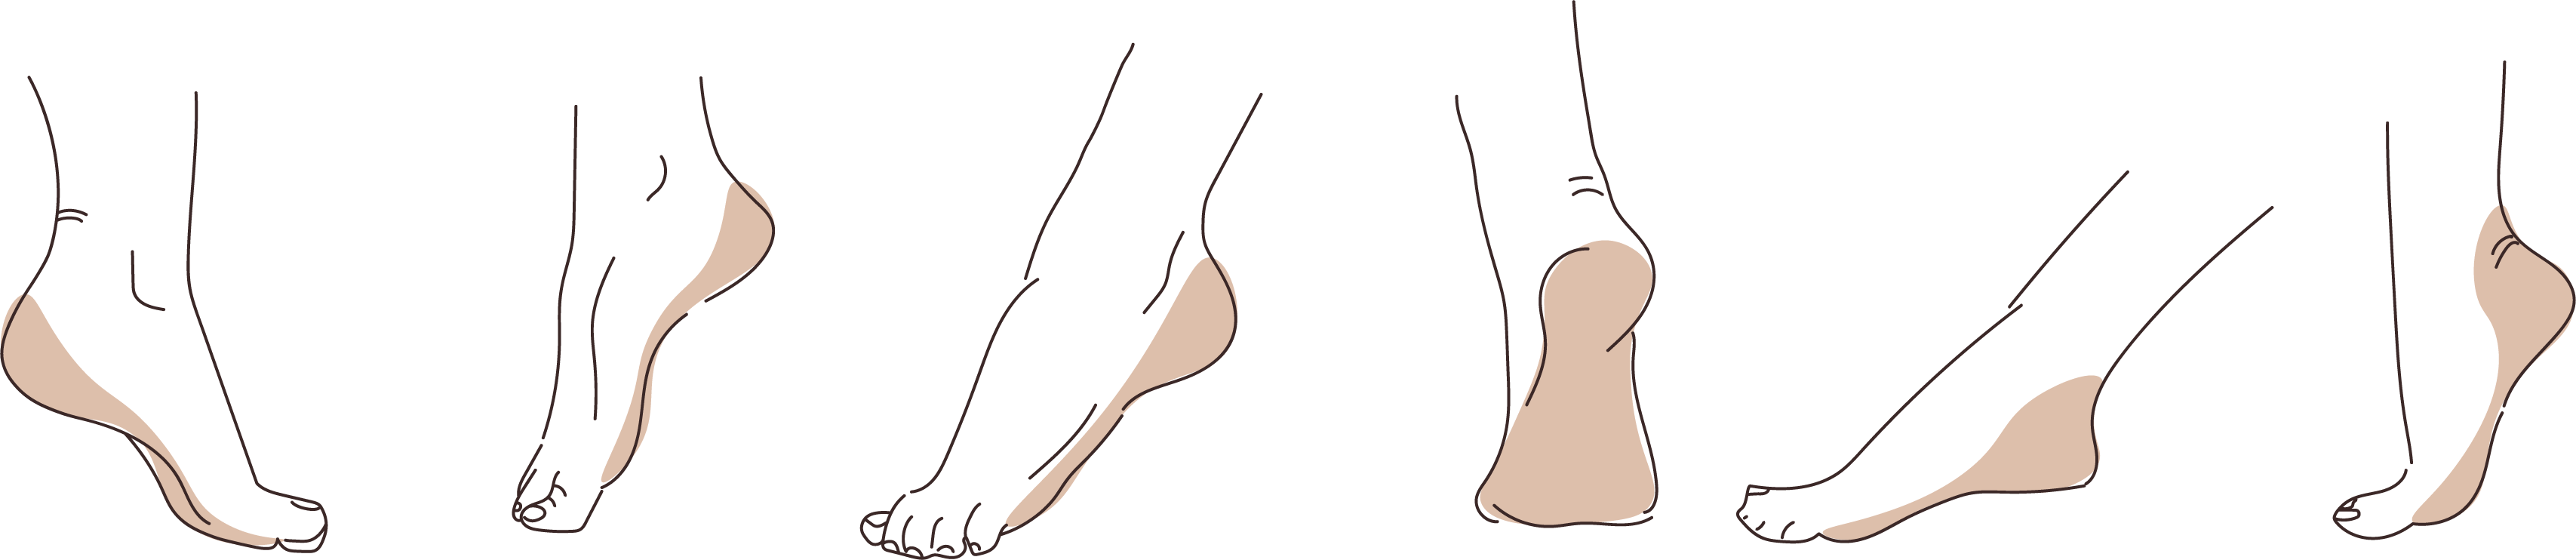 Fußpflege Illustration